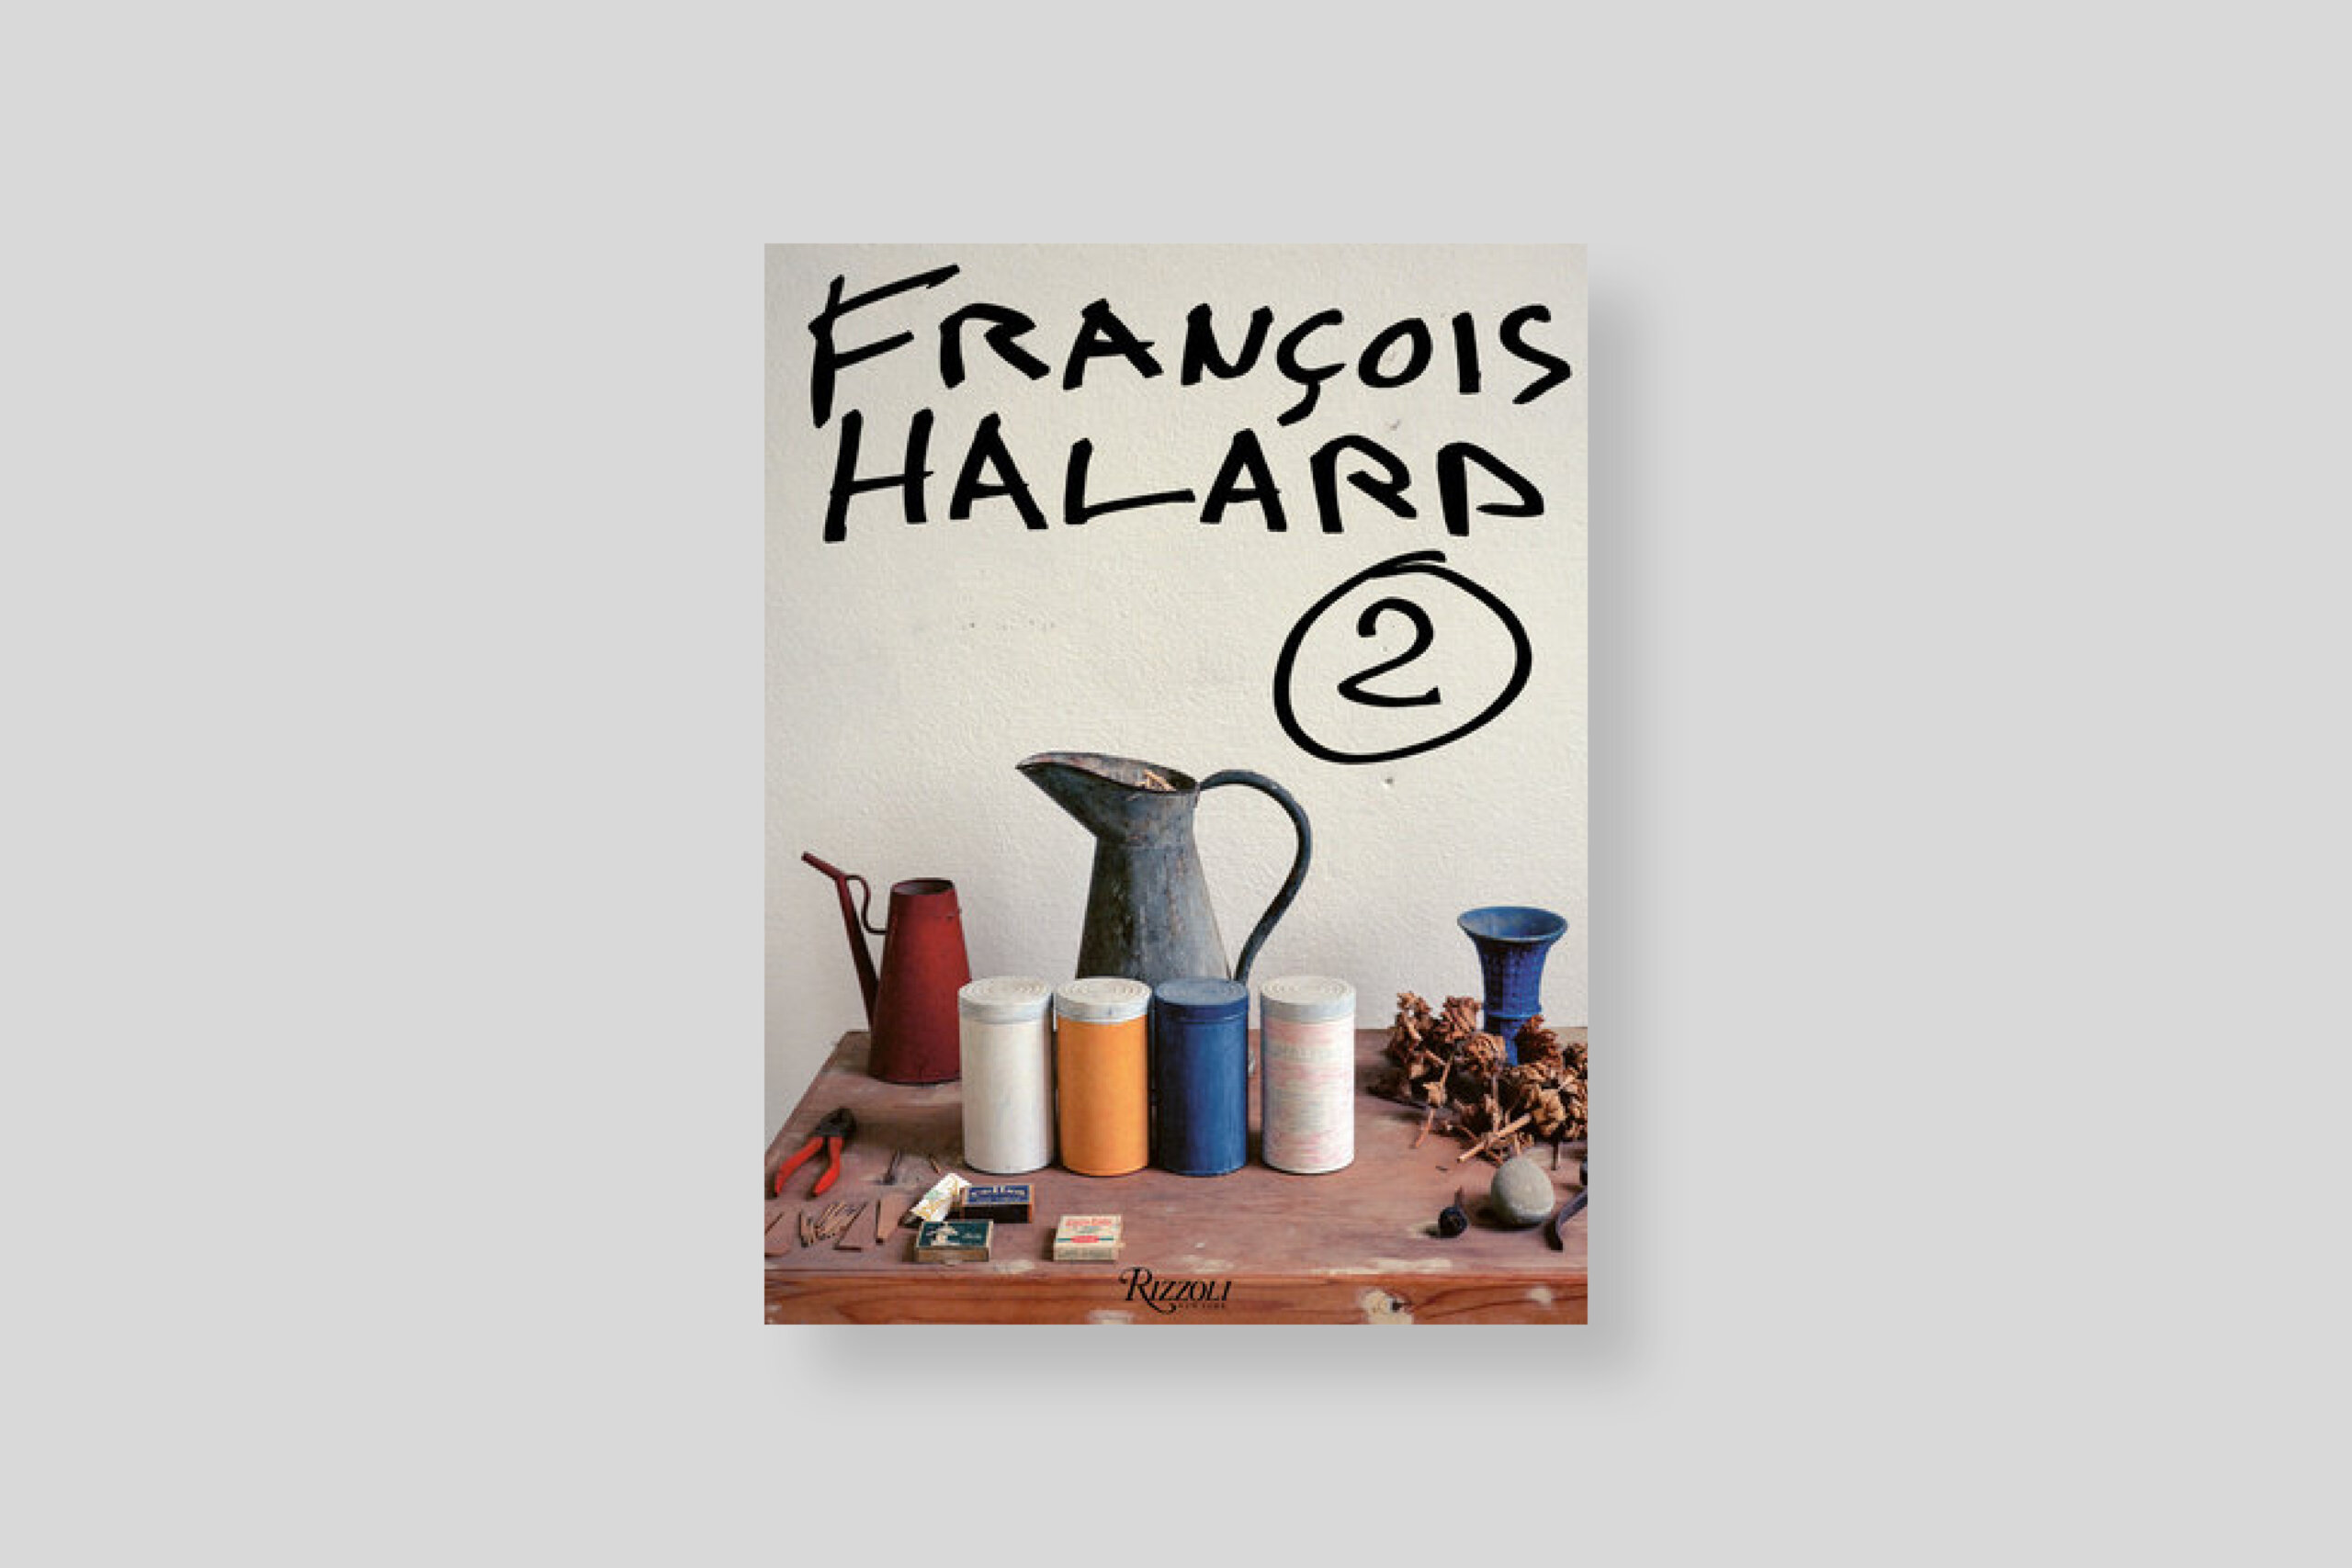 une-vie-photographique-francois-halard-2-rizzoli-cover